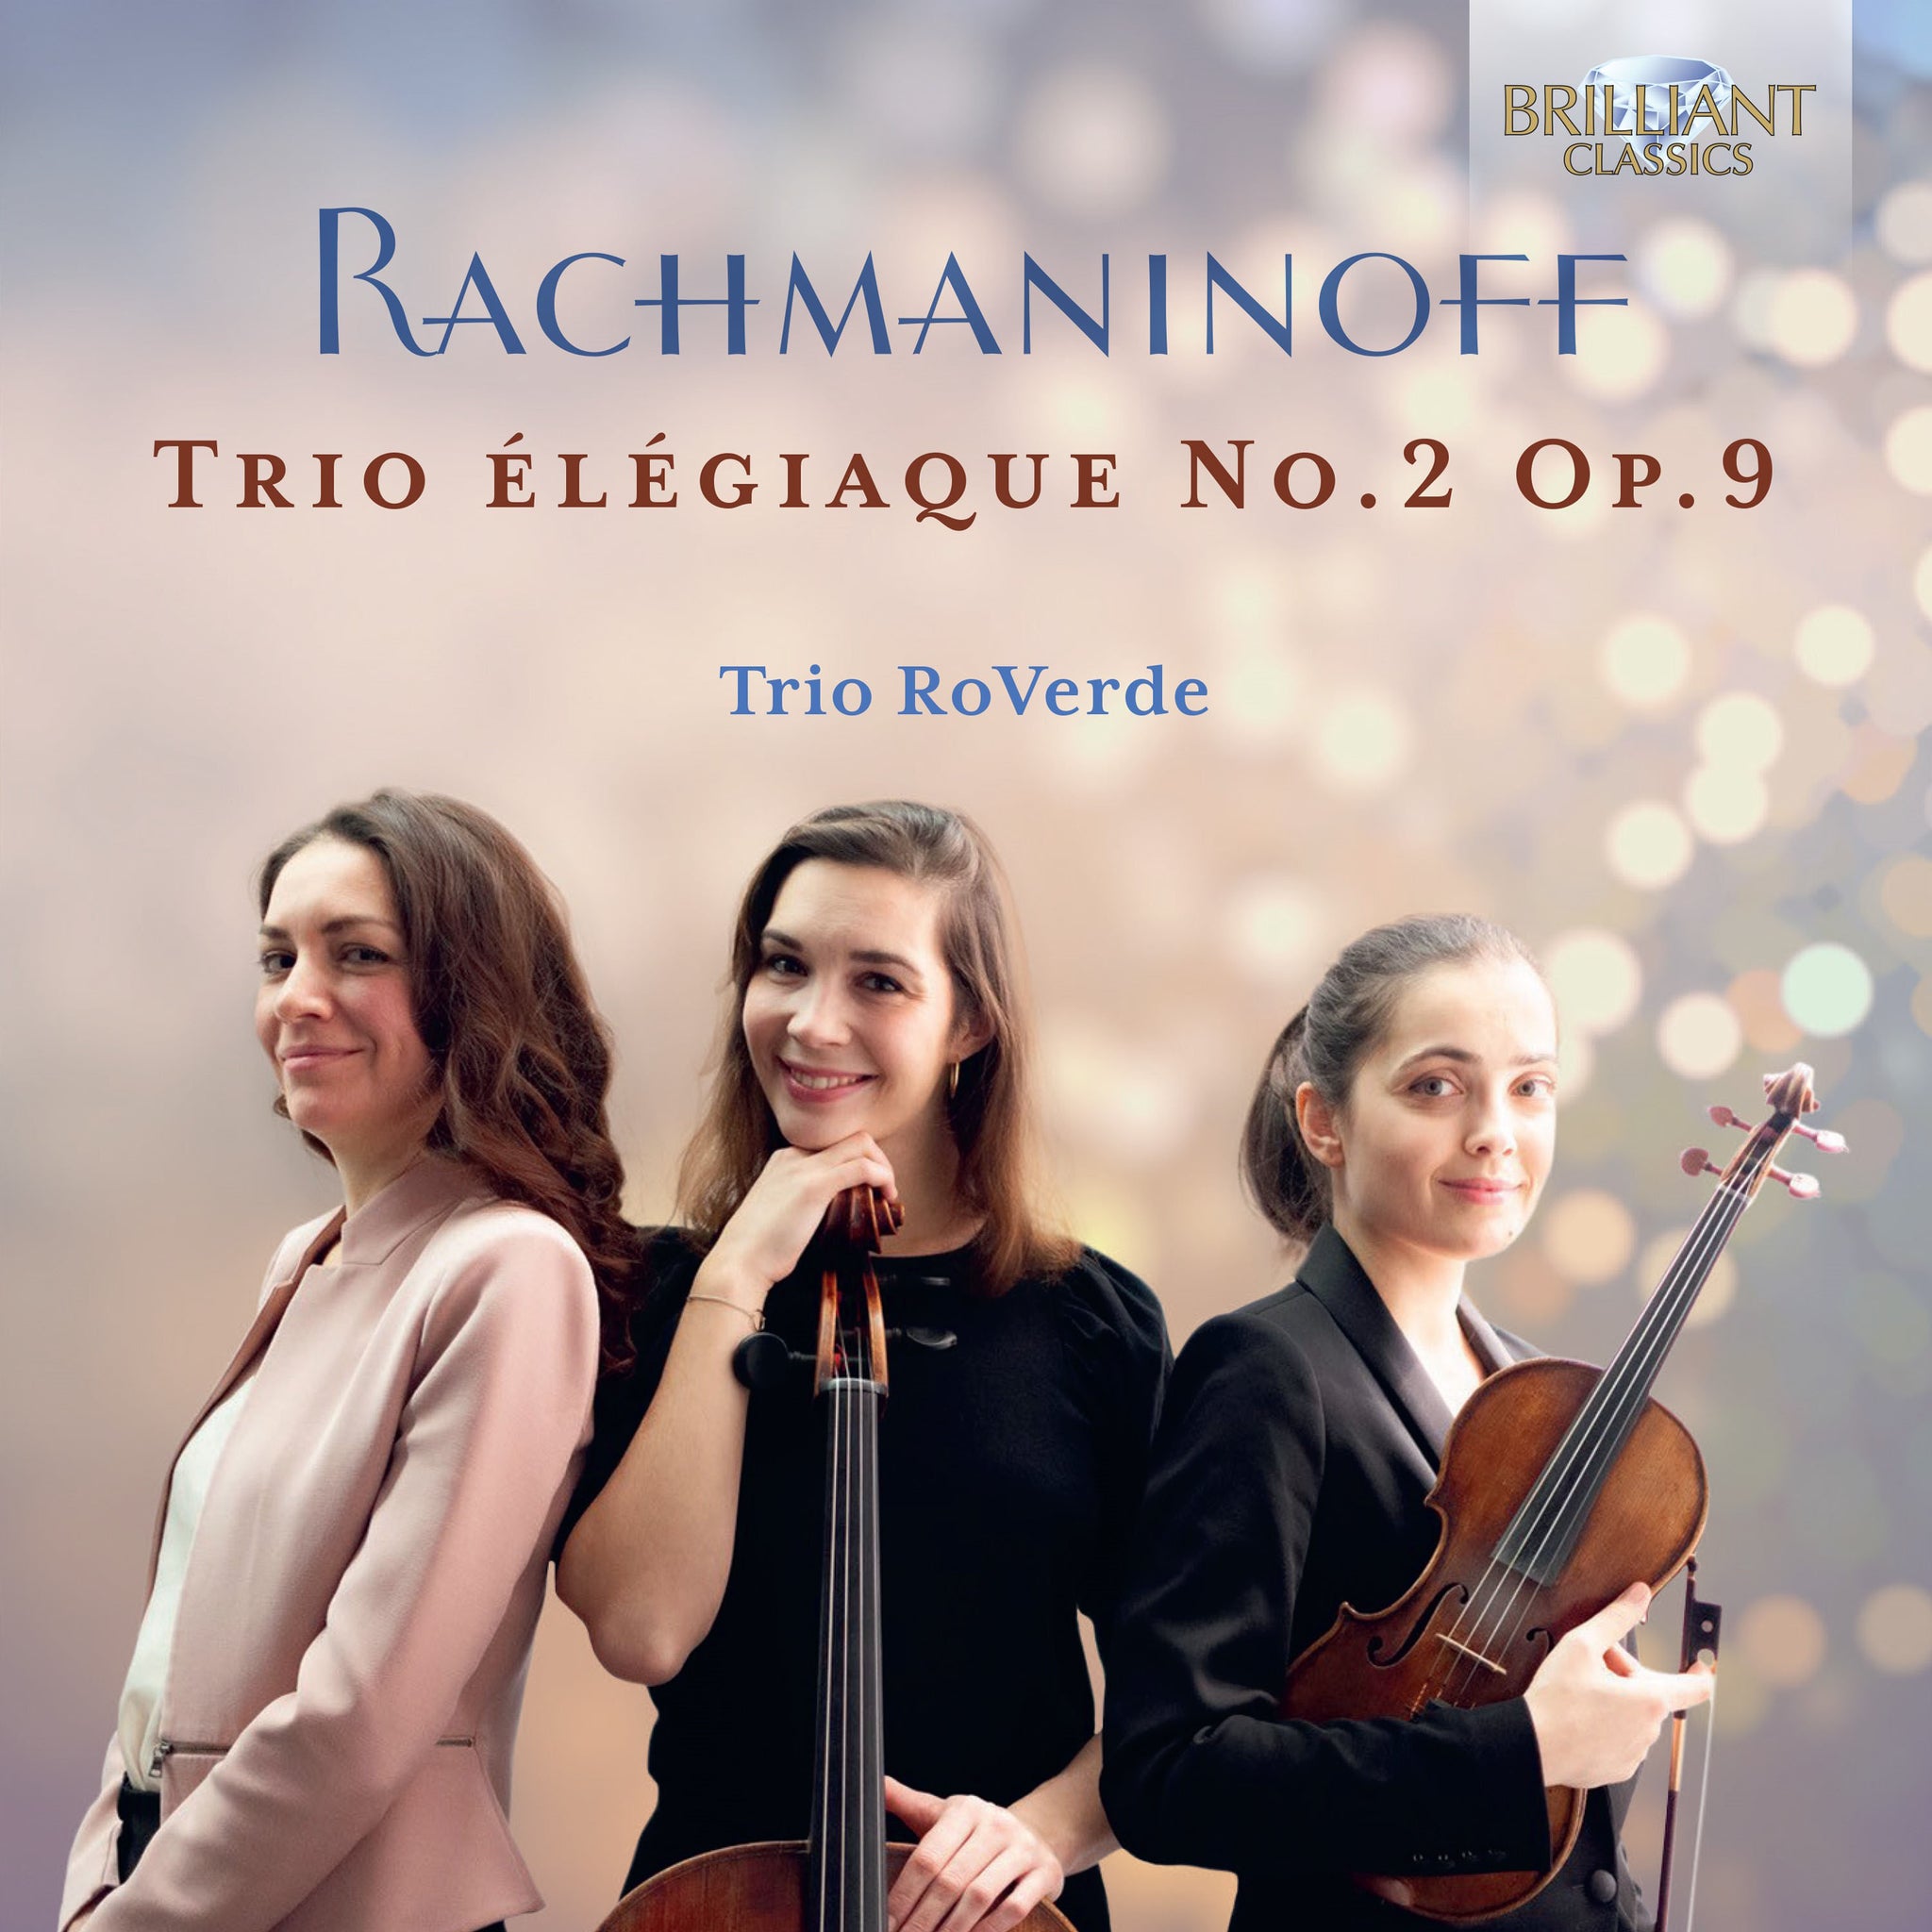 Rachmaninoff: Trio élégiaque No. 2 / Trio RoVerde